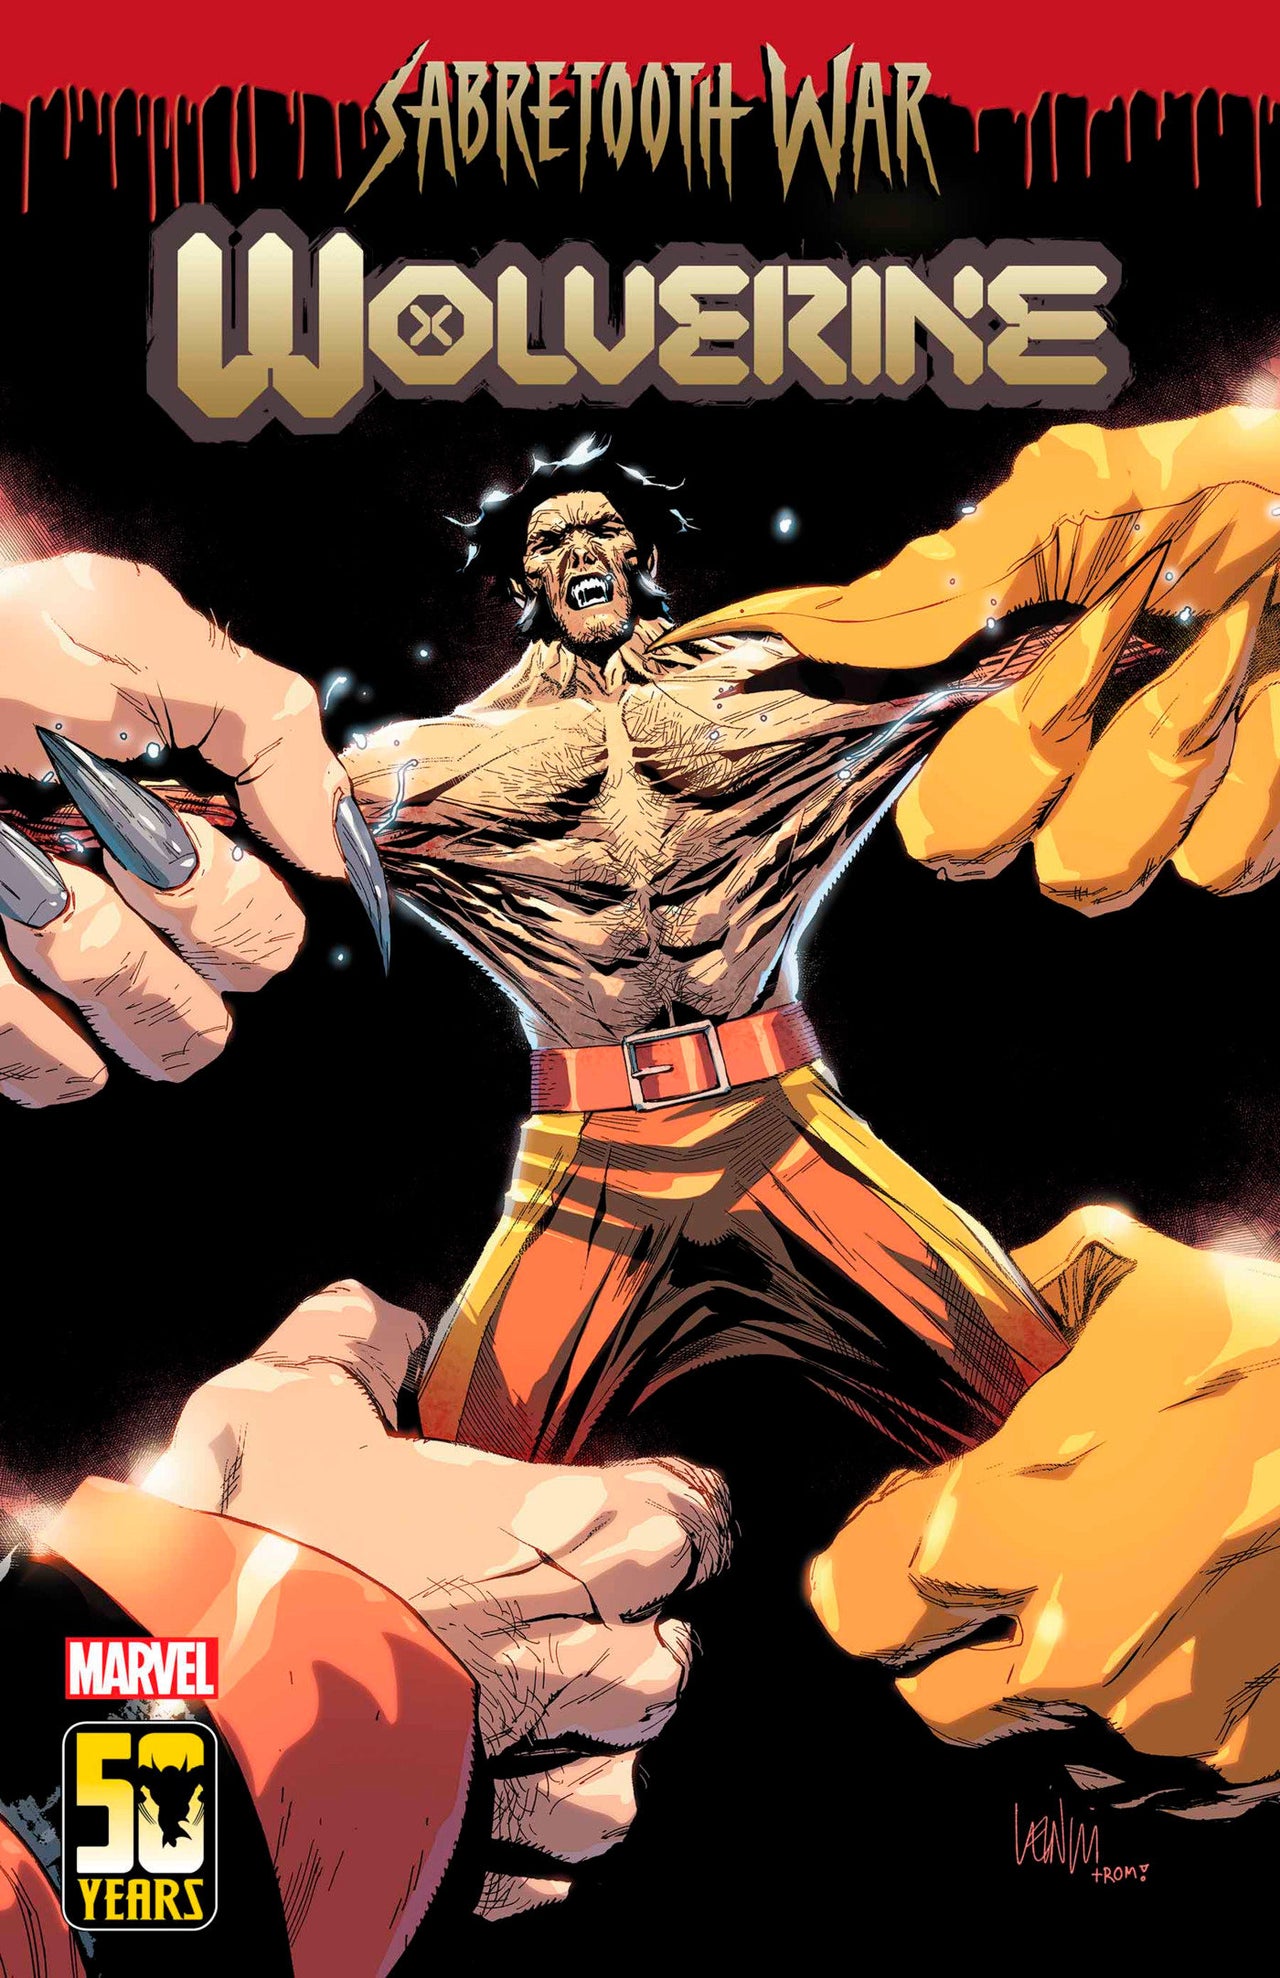 Wolverine (2020) #48